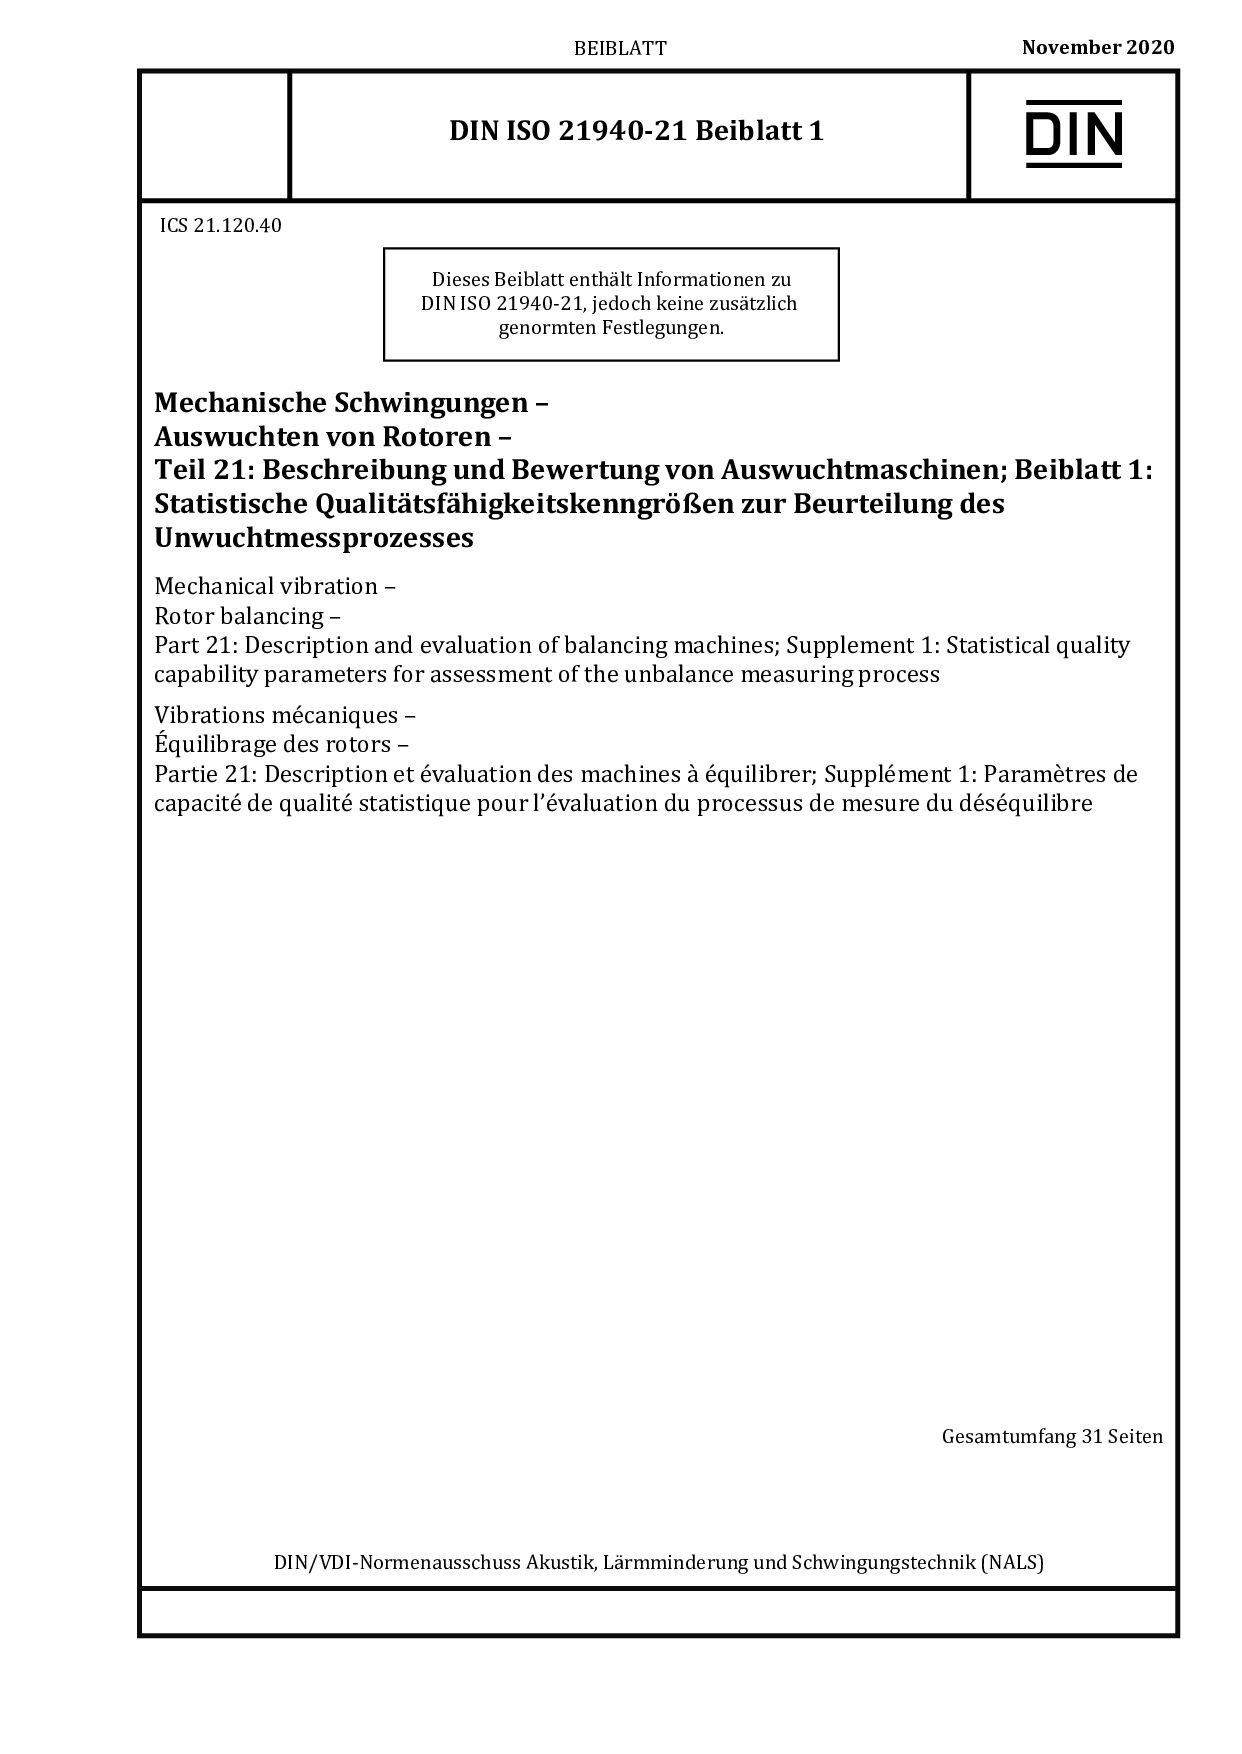 DIN ISO 21940-21 Beiblatt 1:2020